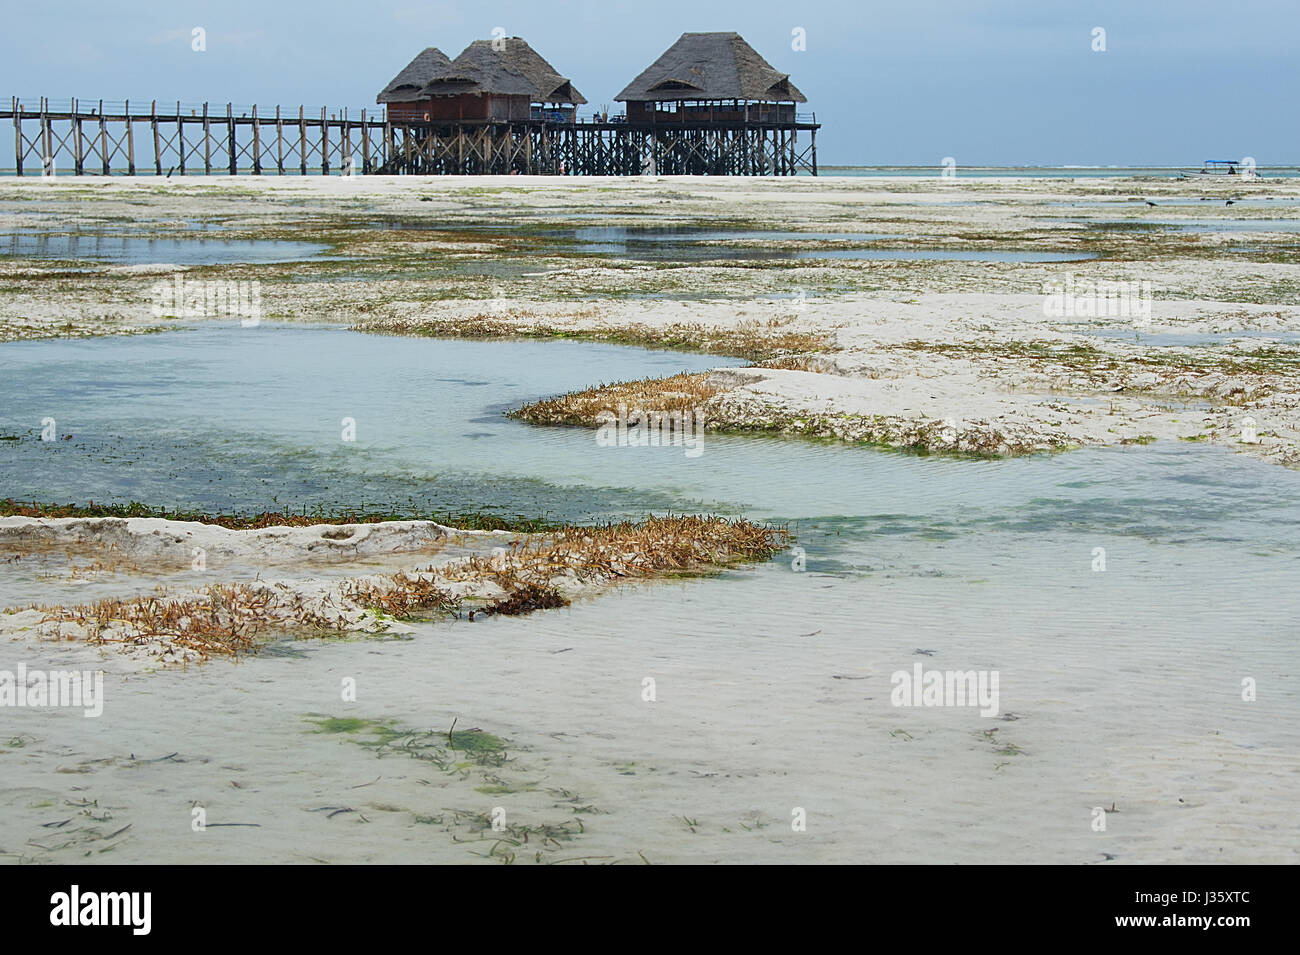 Tropischer Strand mit Ebbe und Holz Palafitte auf Hintergrund - Zanzibar Island - Tansania - Afrika Stockfoto